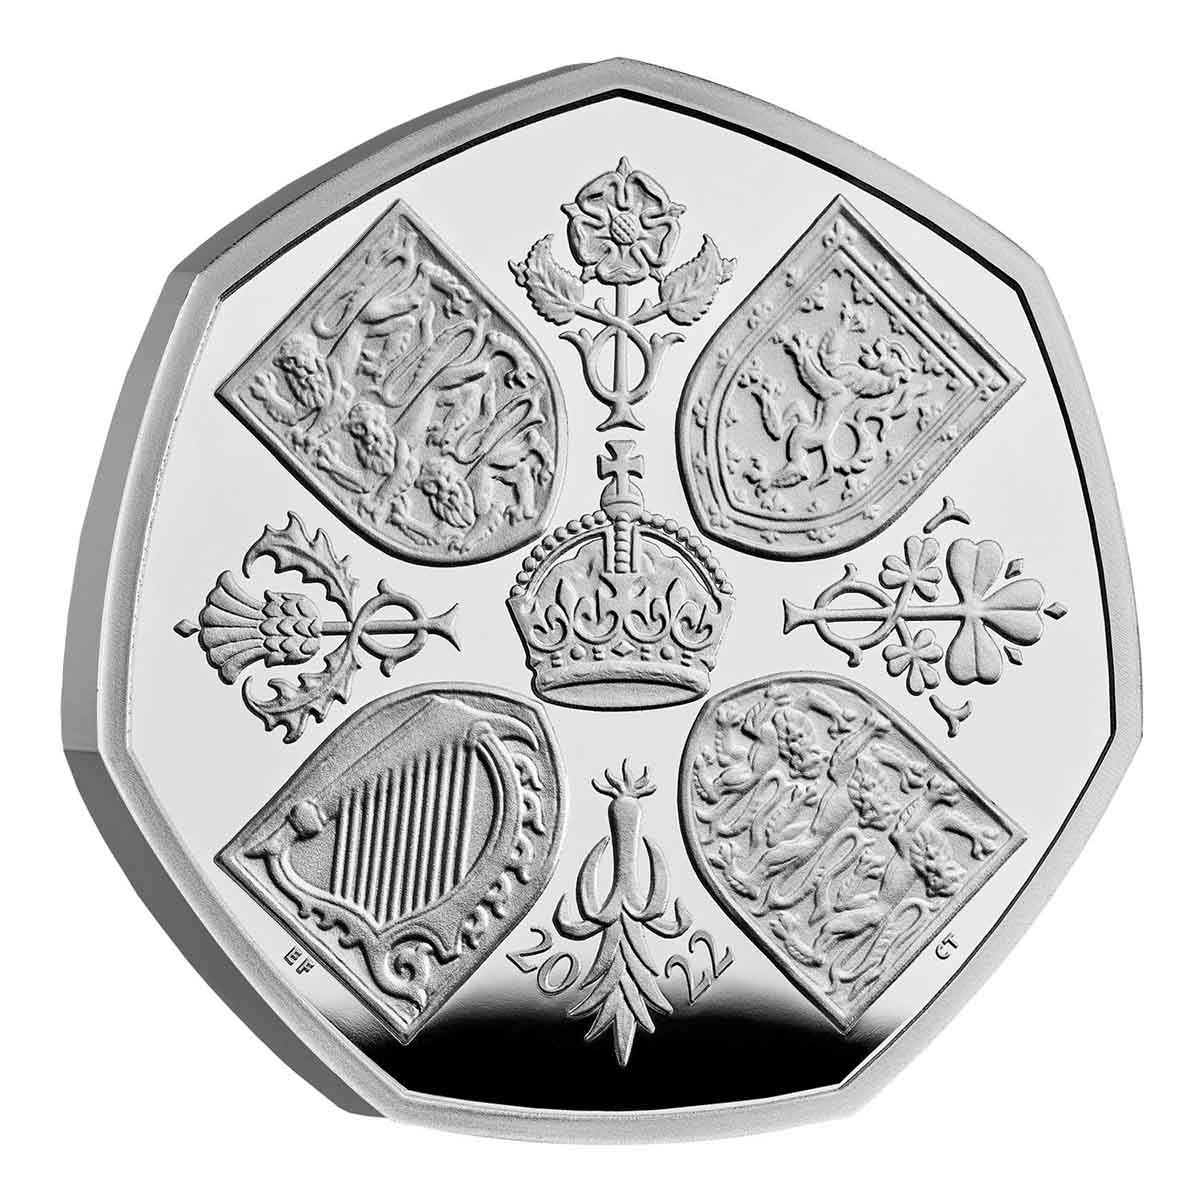 King Charles III 2022 50p Queen Elizabeth II Tribute Silver Proof Piedfort Coin